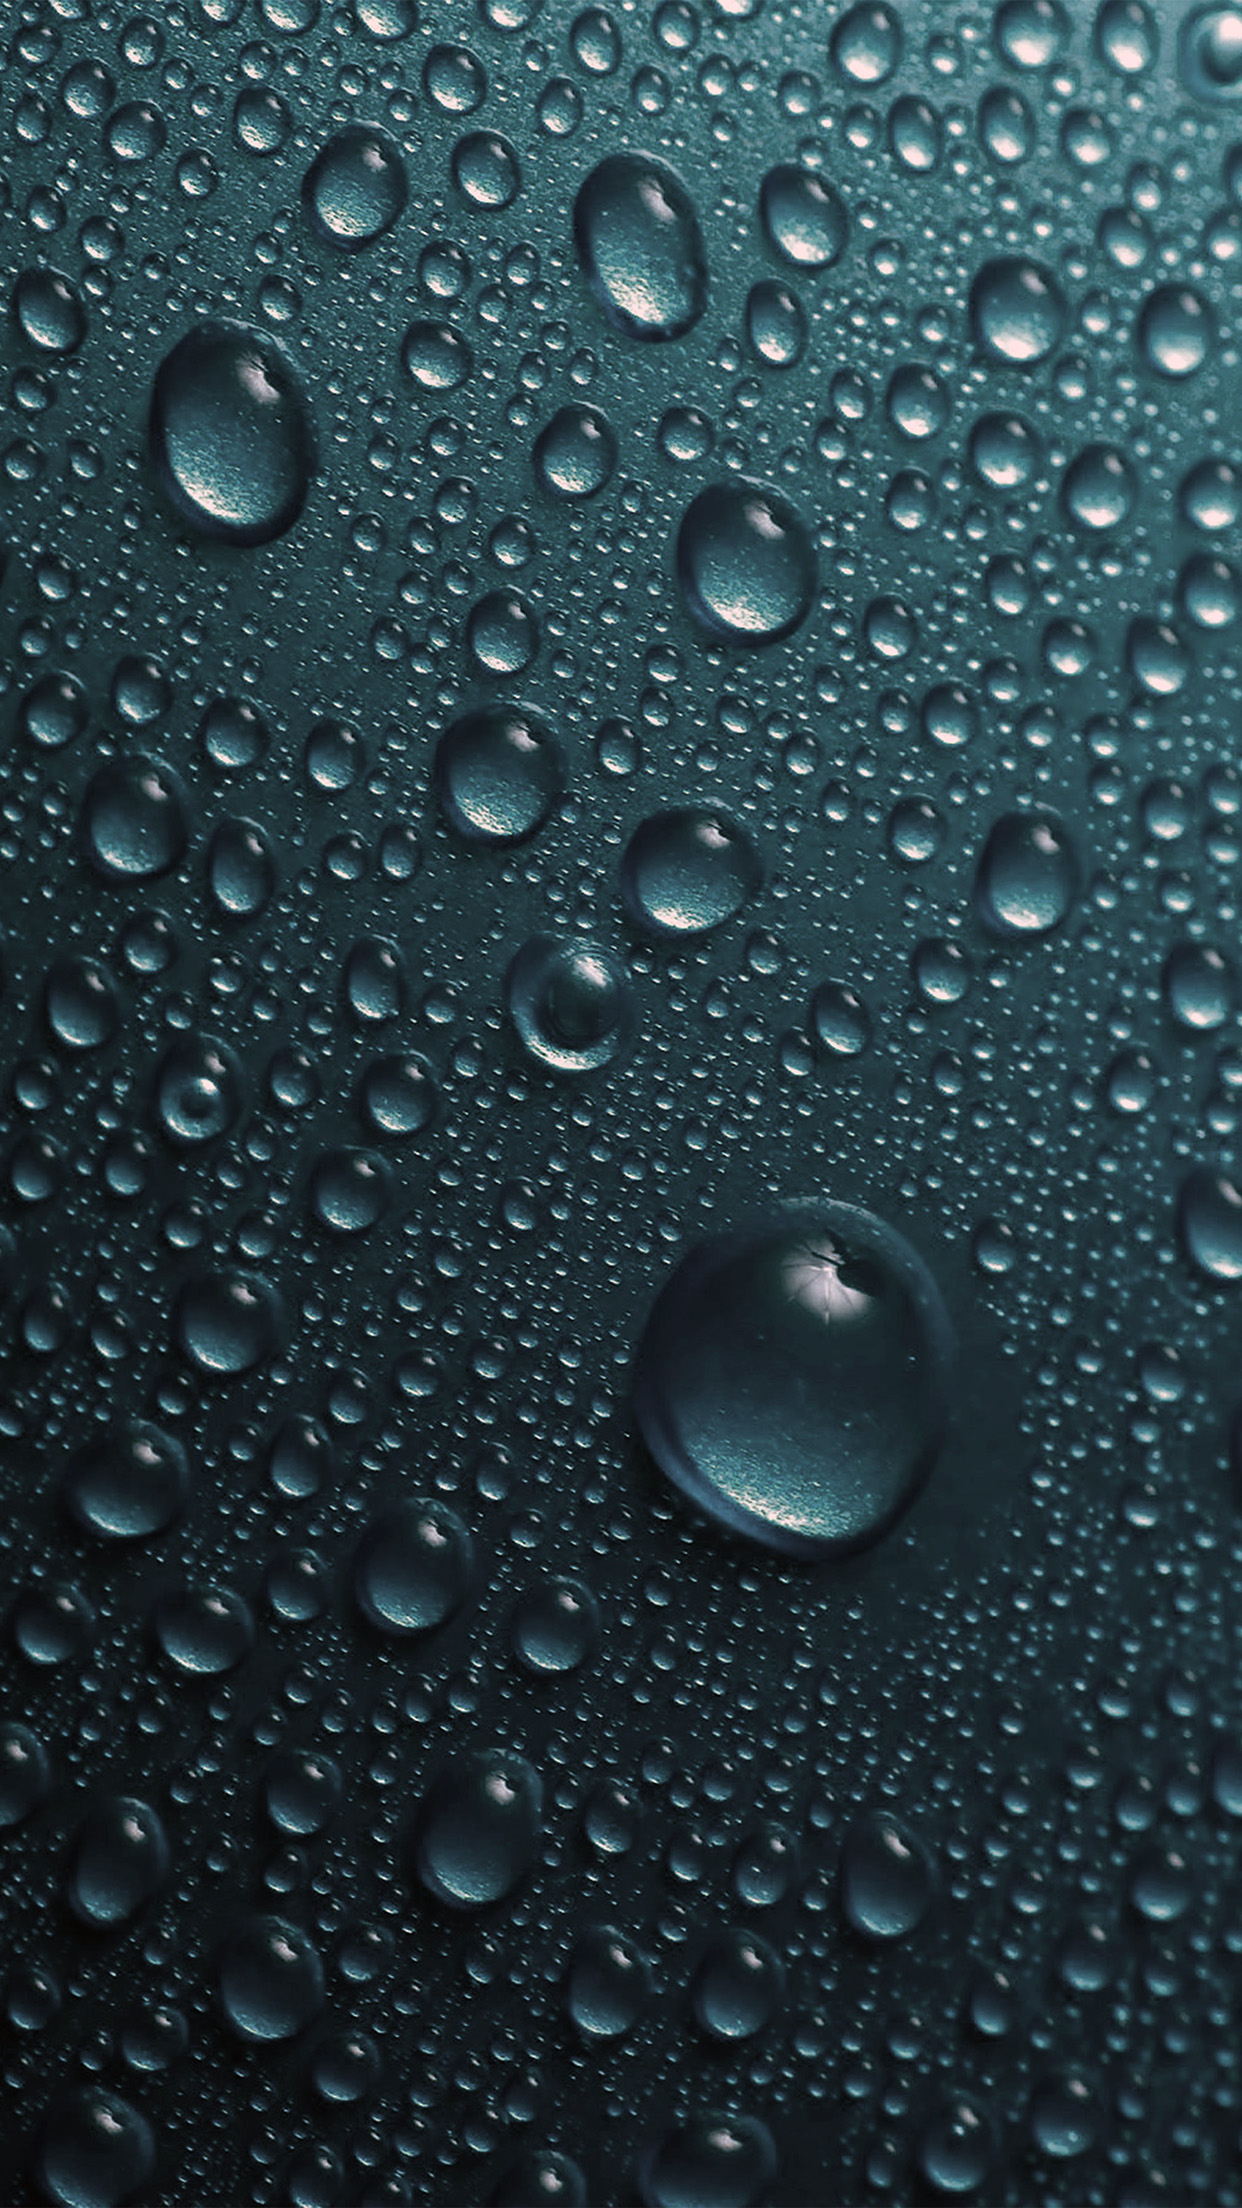 1242x2208 | iPhone X wallpaper | vr32-rain-dropblue-water-sad-pattern-dark